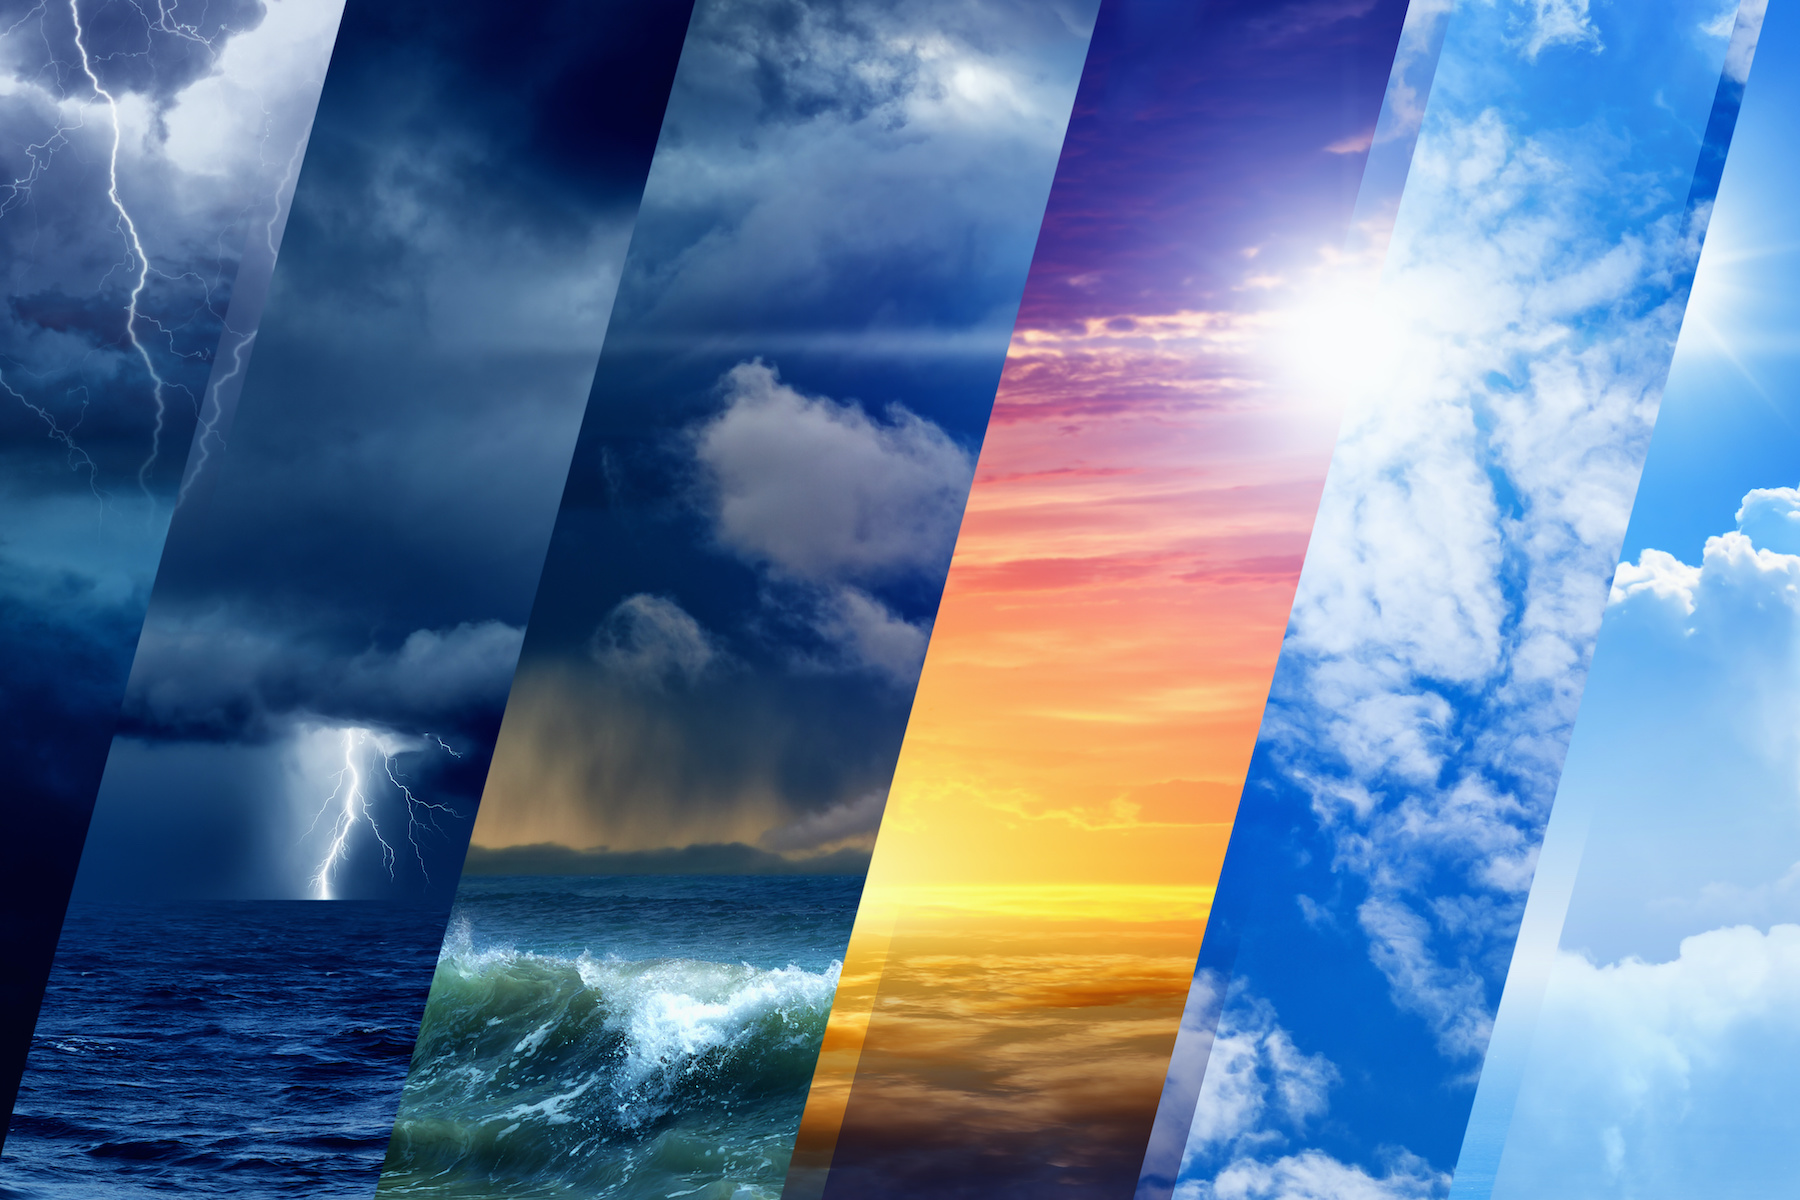 Pluie, tornades, températures,… 10 questions sur la météo. © IgorZh, Adobe Stock